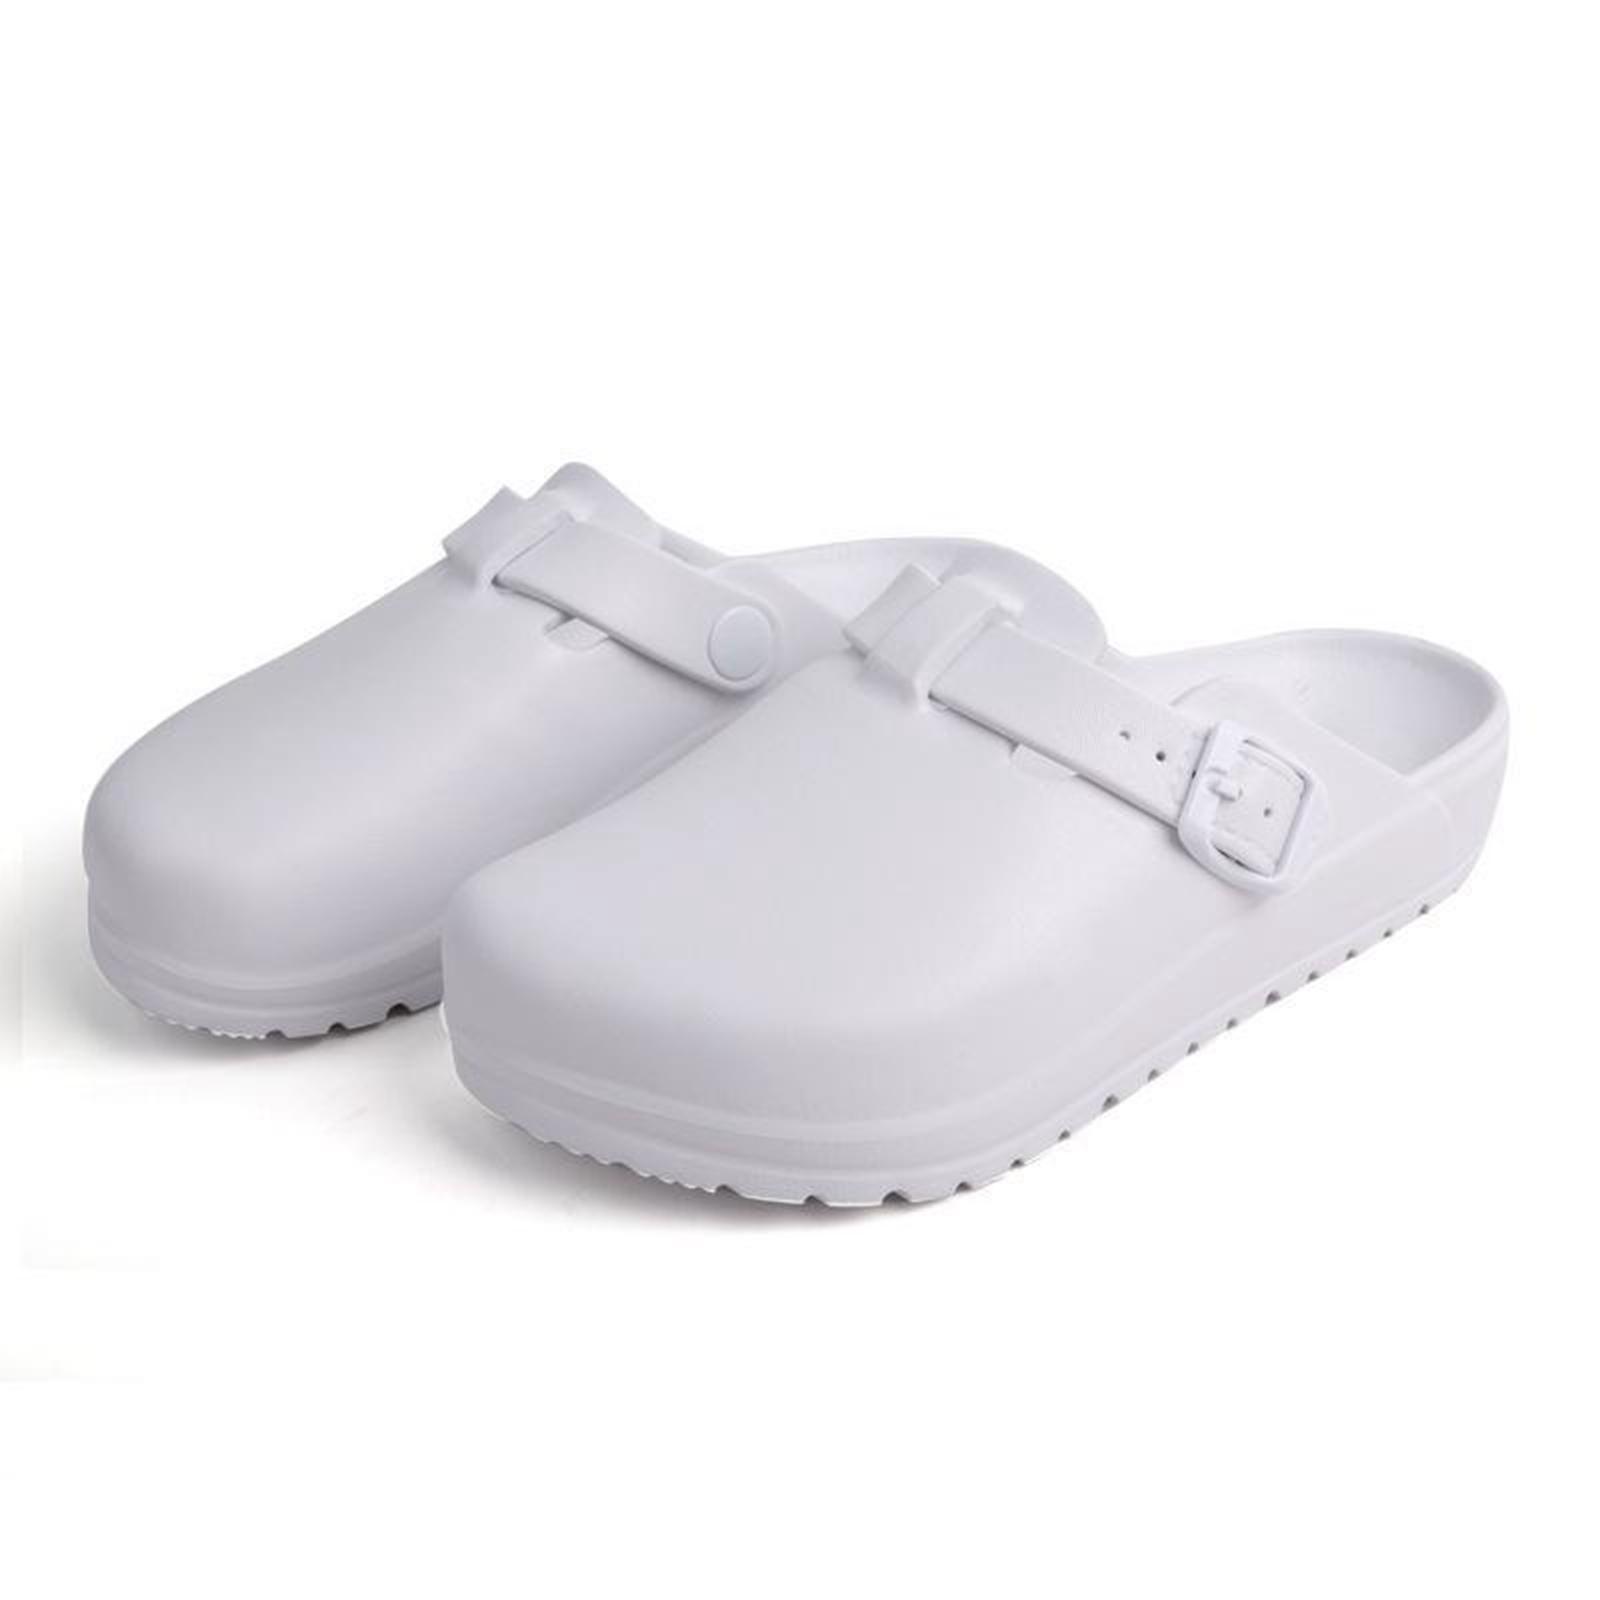 Nurse Clogs Slippers Waterproof Women Nursing Shoes for Nurse Doctor Summer